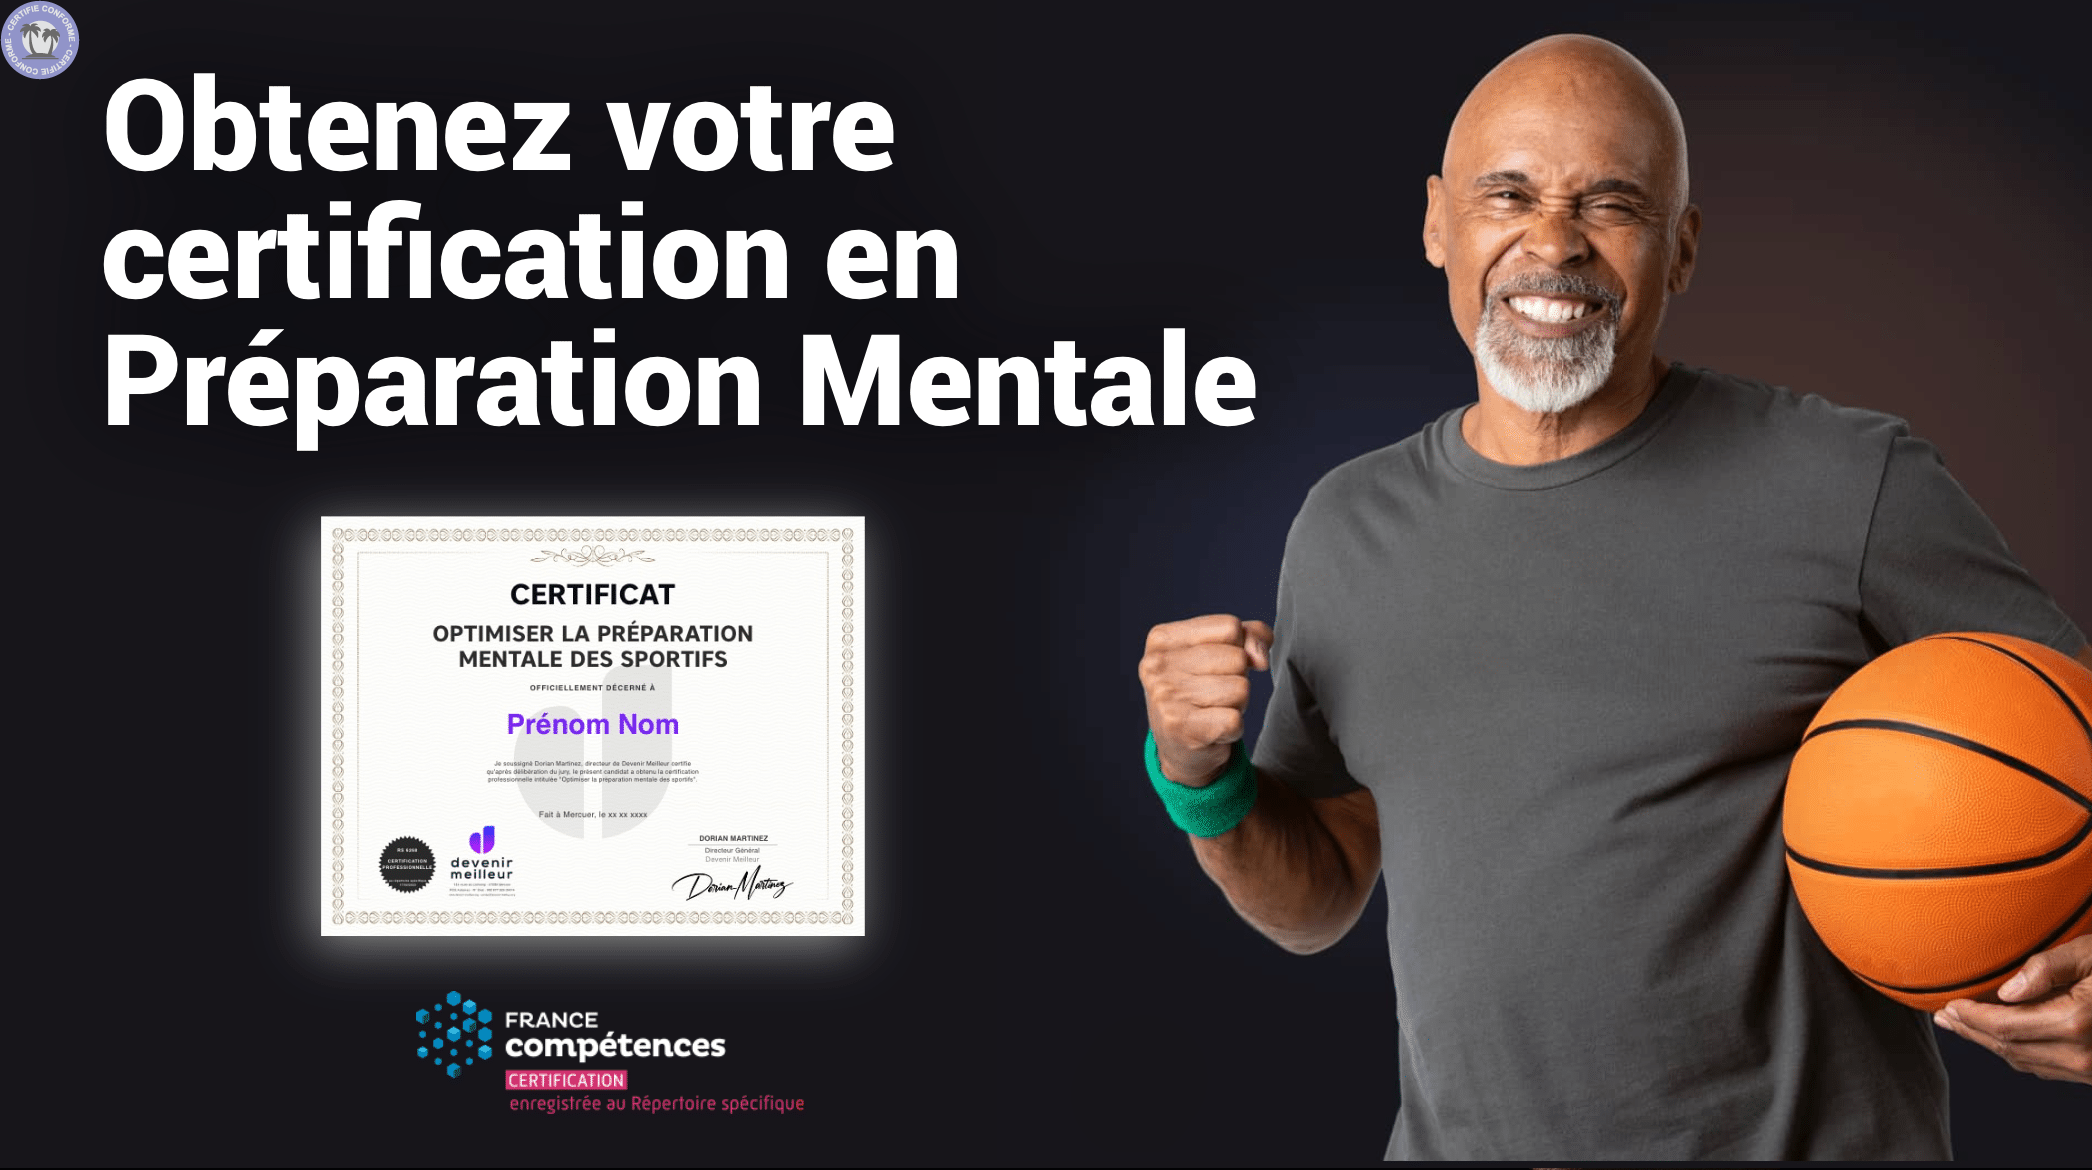 Obtenez votre certification en Préparation Mentale à Mercuer